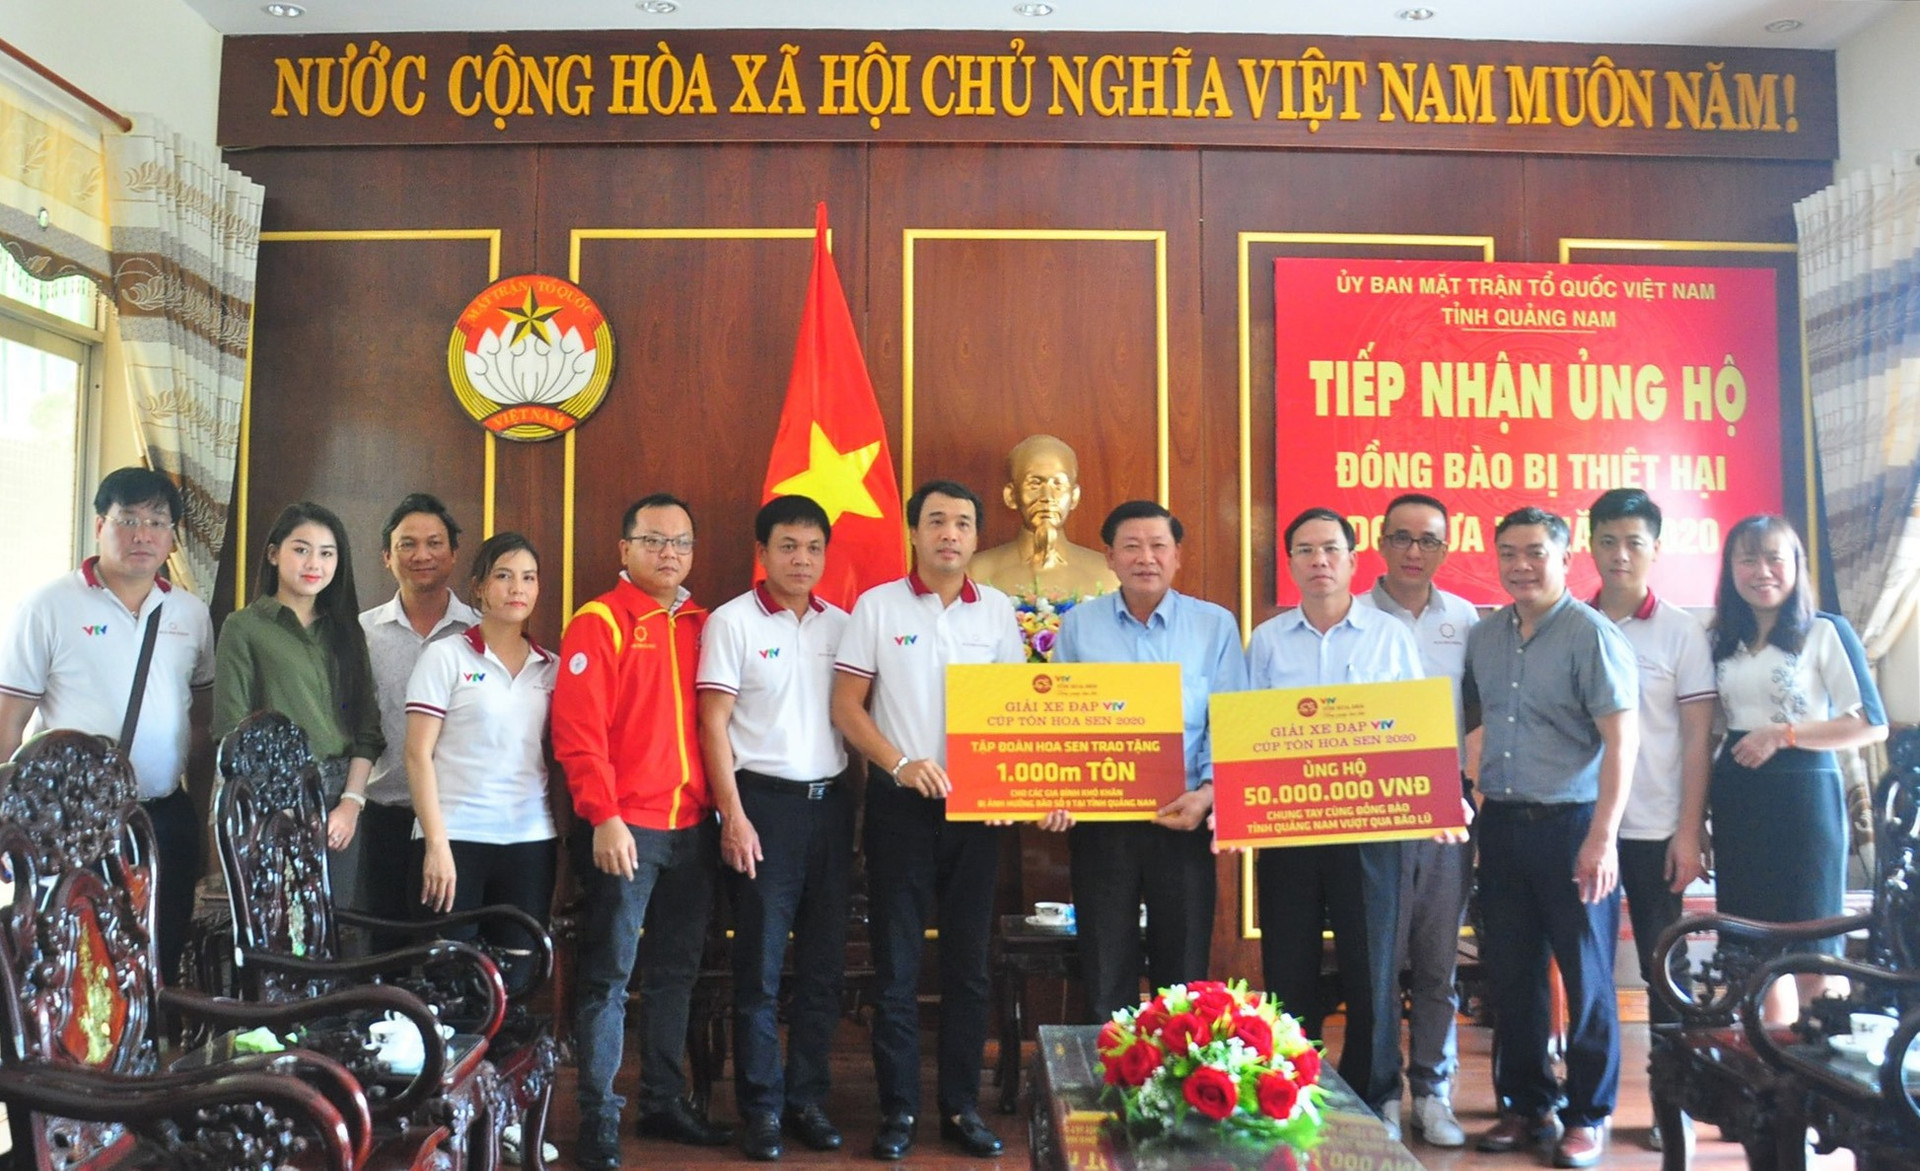 Ban tổ chức giải xe đạp VTV Cúp Tôn Hoa Sen 2020 trao ủng hộ giúp Quảng Nam khắc phục hauau quả thiên tai. Ảnh: VINH ANH